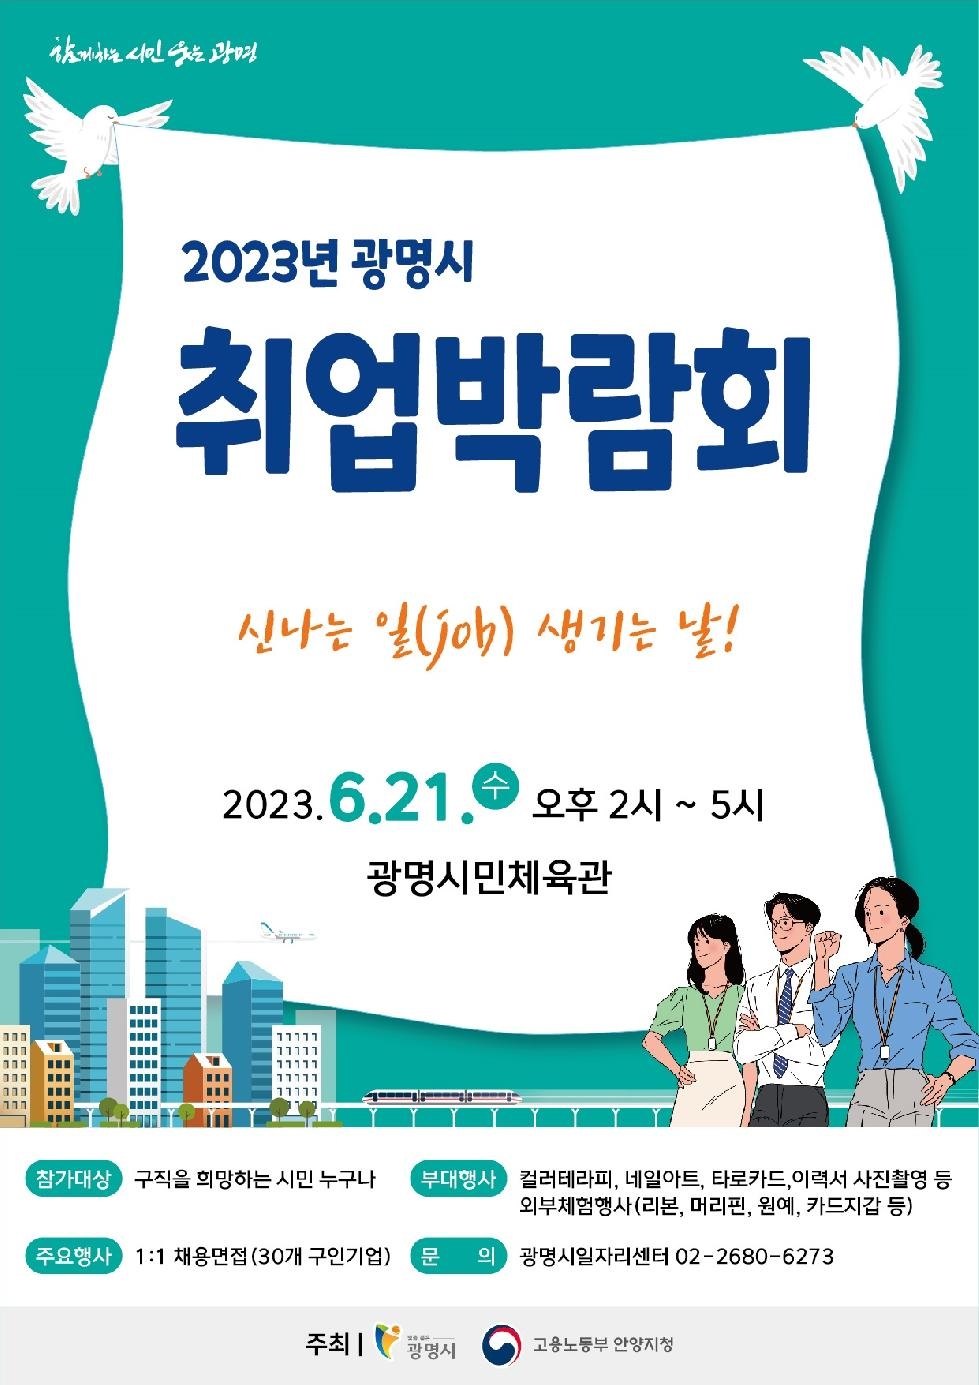 신나는 일(job) 생기는 날… 21일 광명시 취업박람회 개최